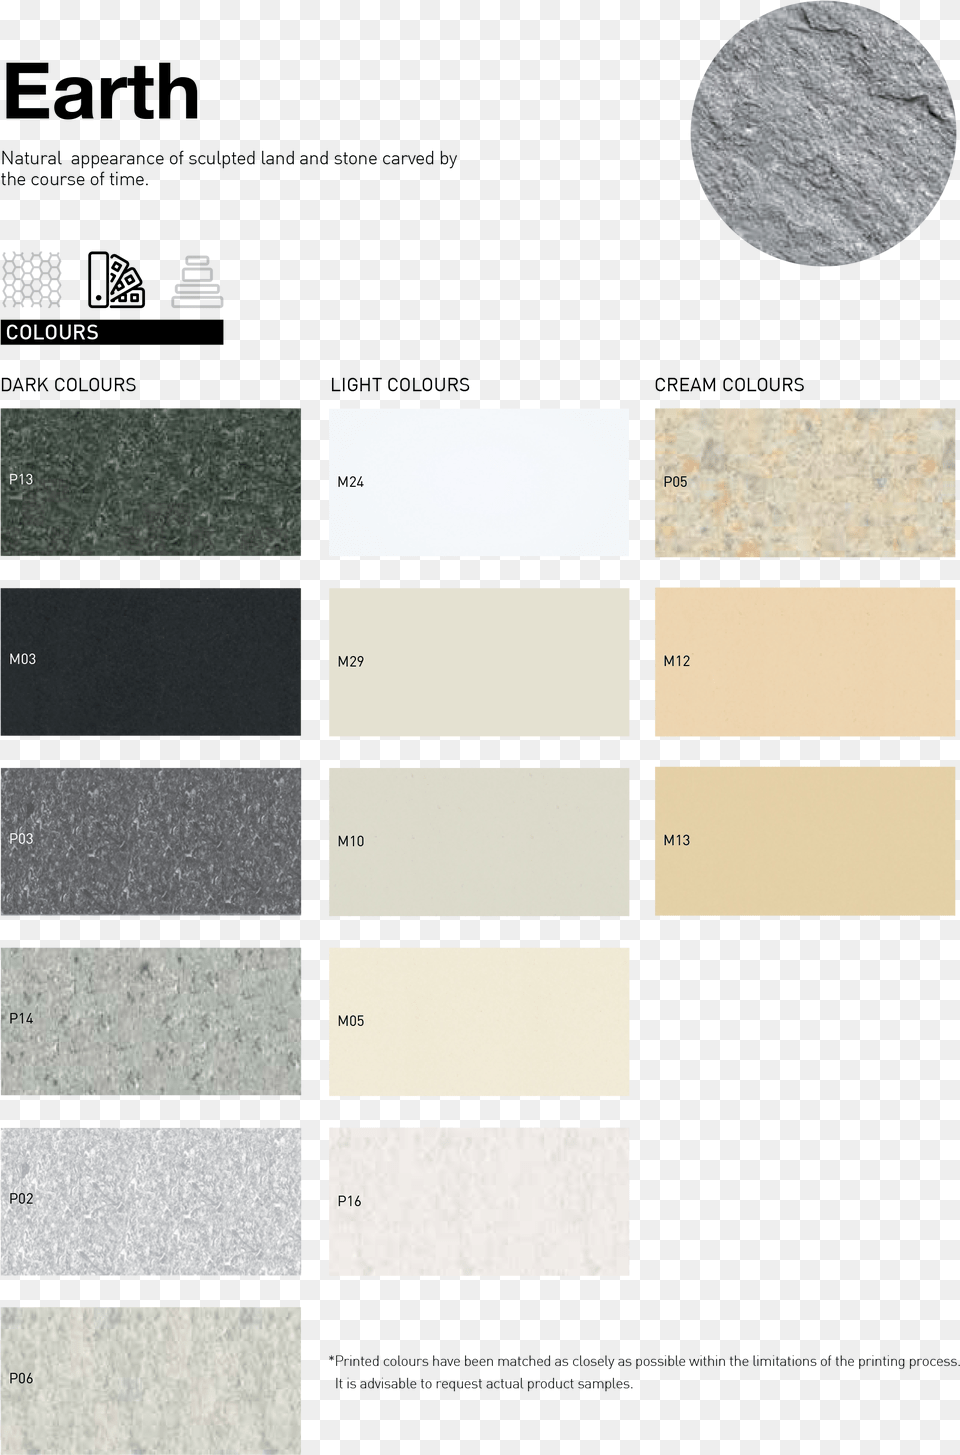 Earth Texture Diagram, Floor, Flooring, Slate, Granite Png